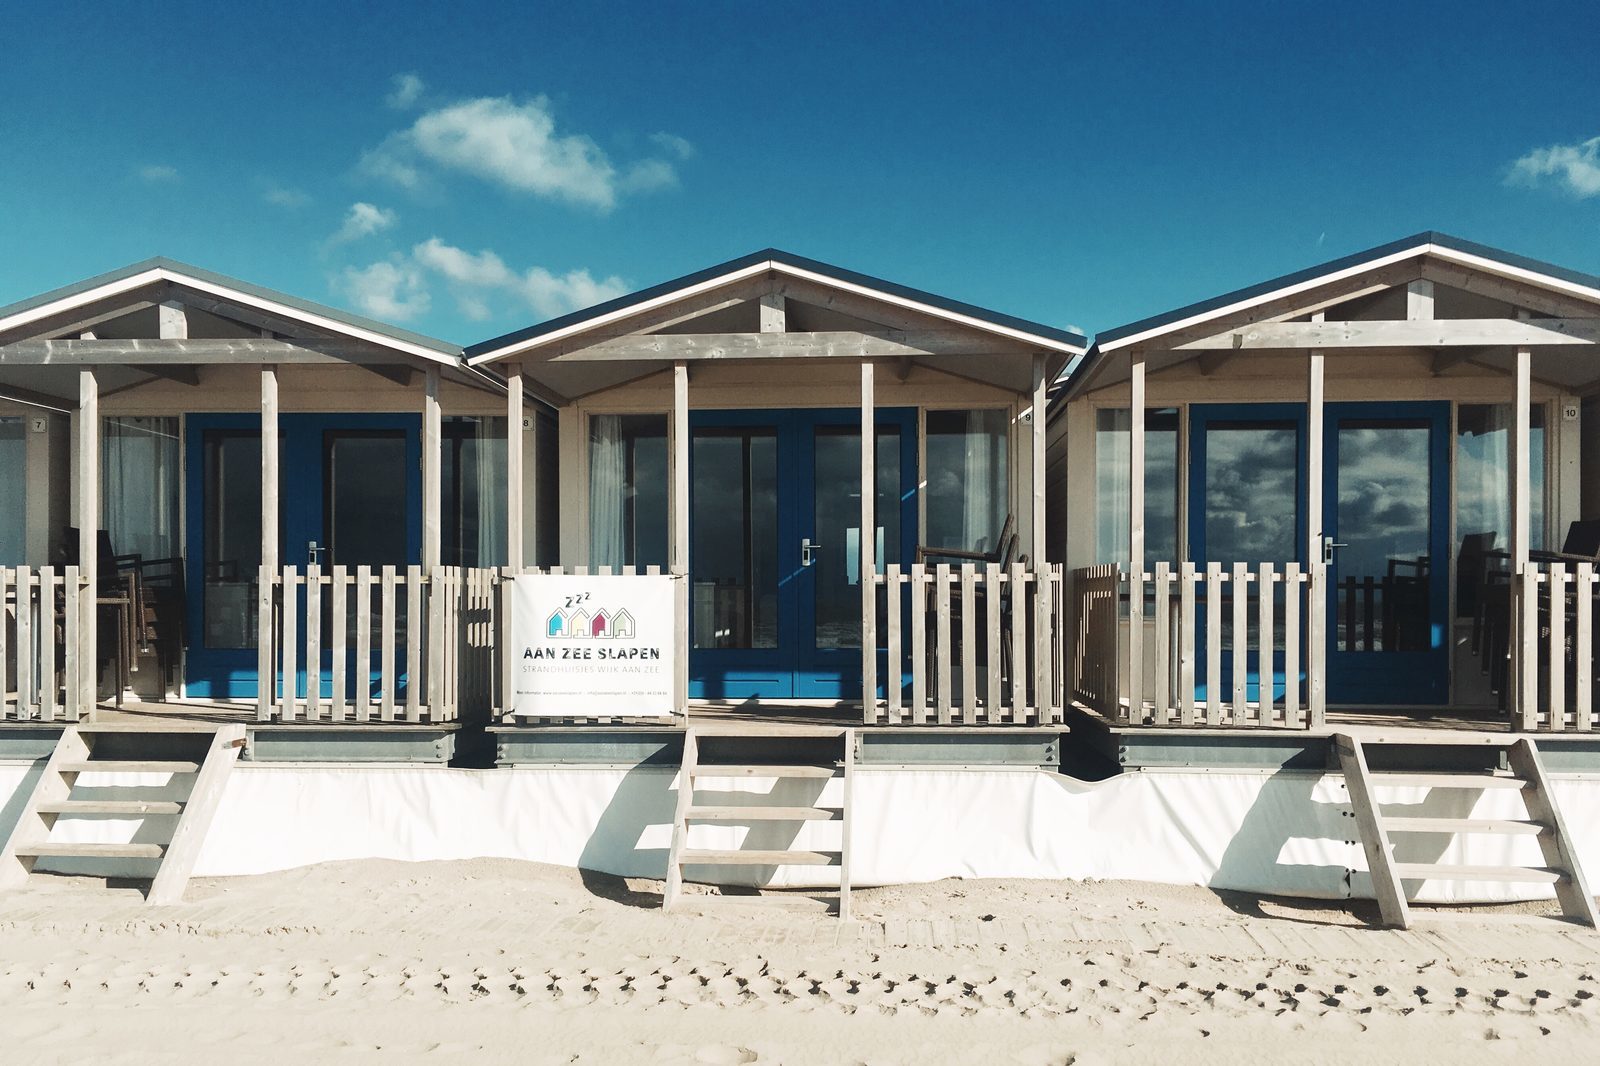 Am Meer schlafen: Strandhaus in Wijk aan Zee